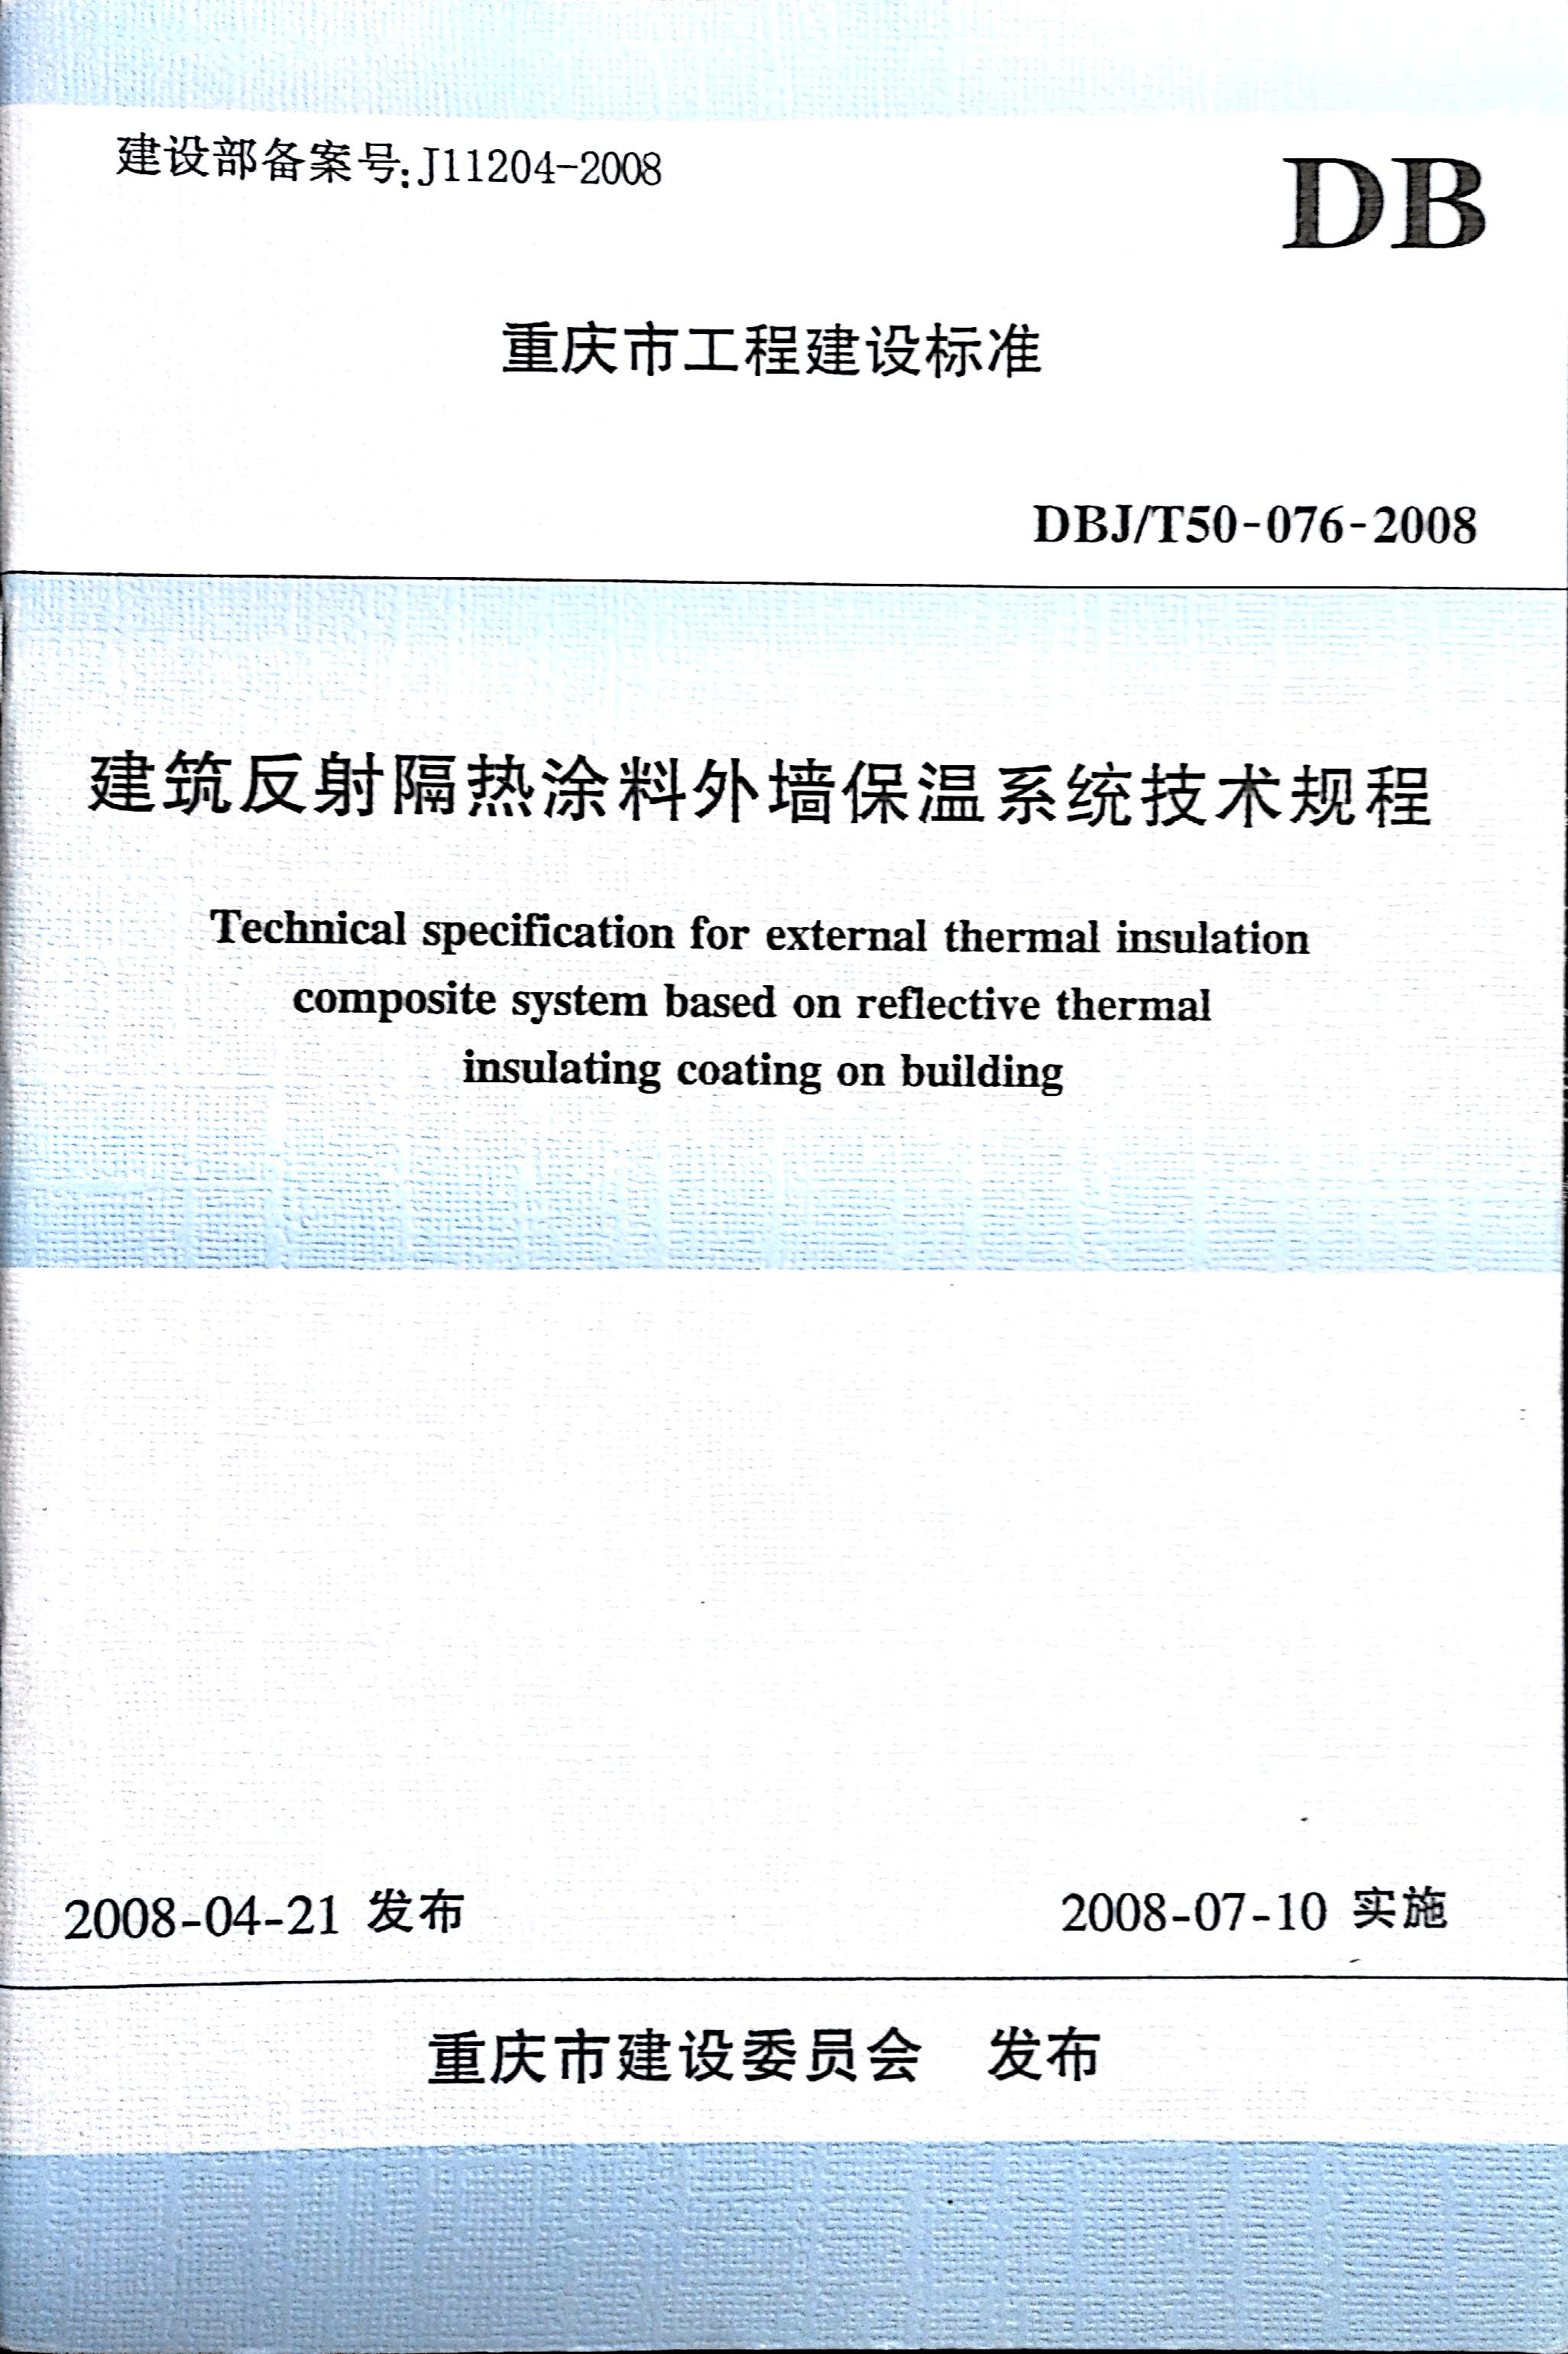 重庆市地方标准建筑反射隔热涂料外墙保温系统技术规程DBJT50-076-2008